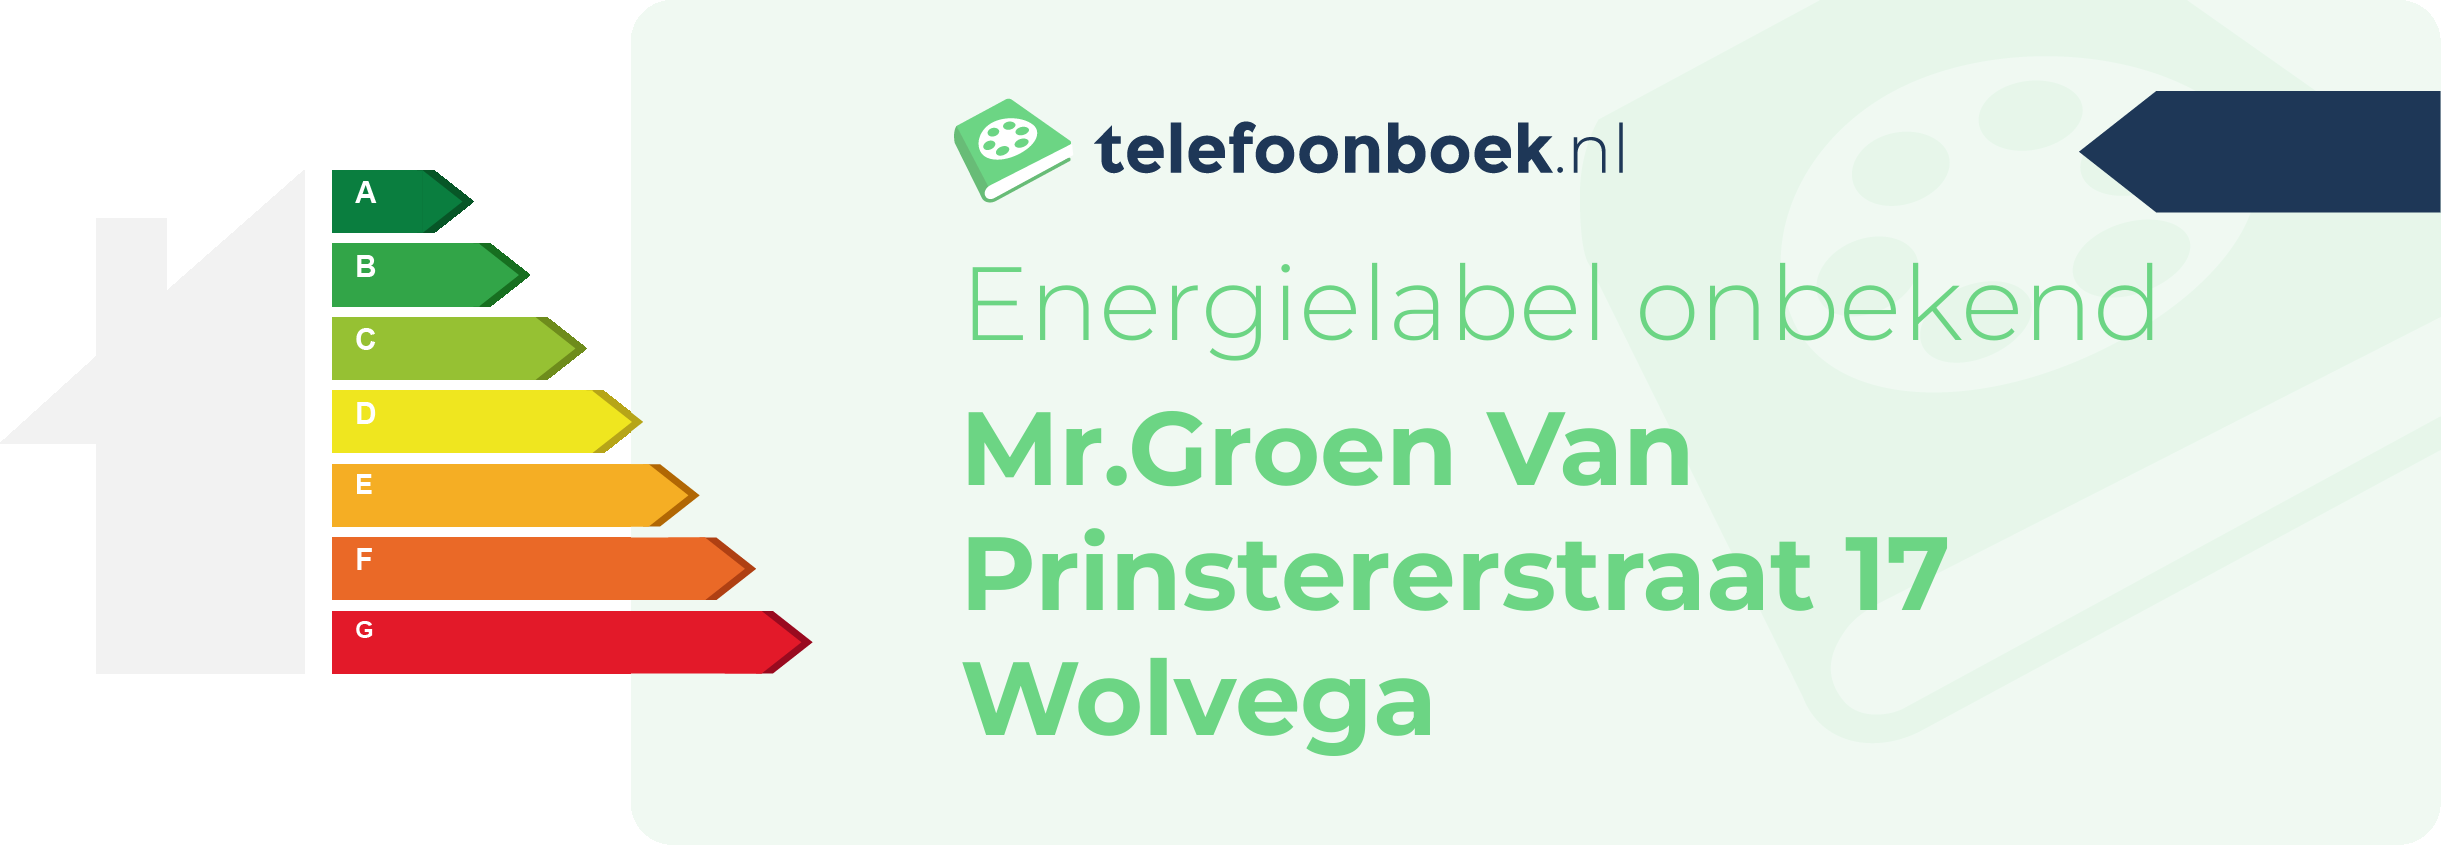 Energielabel Mr.Groen Van Prinstererstraat 17 Wolvega